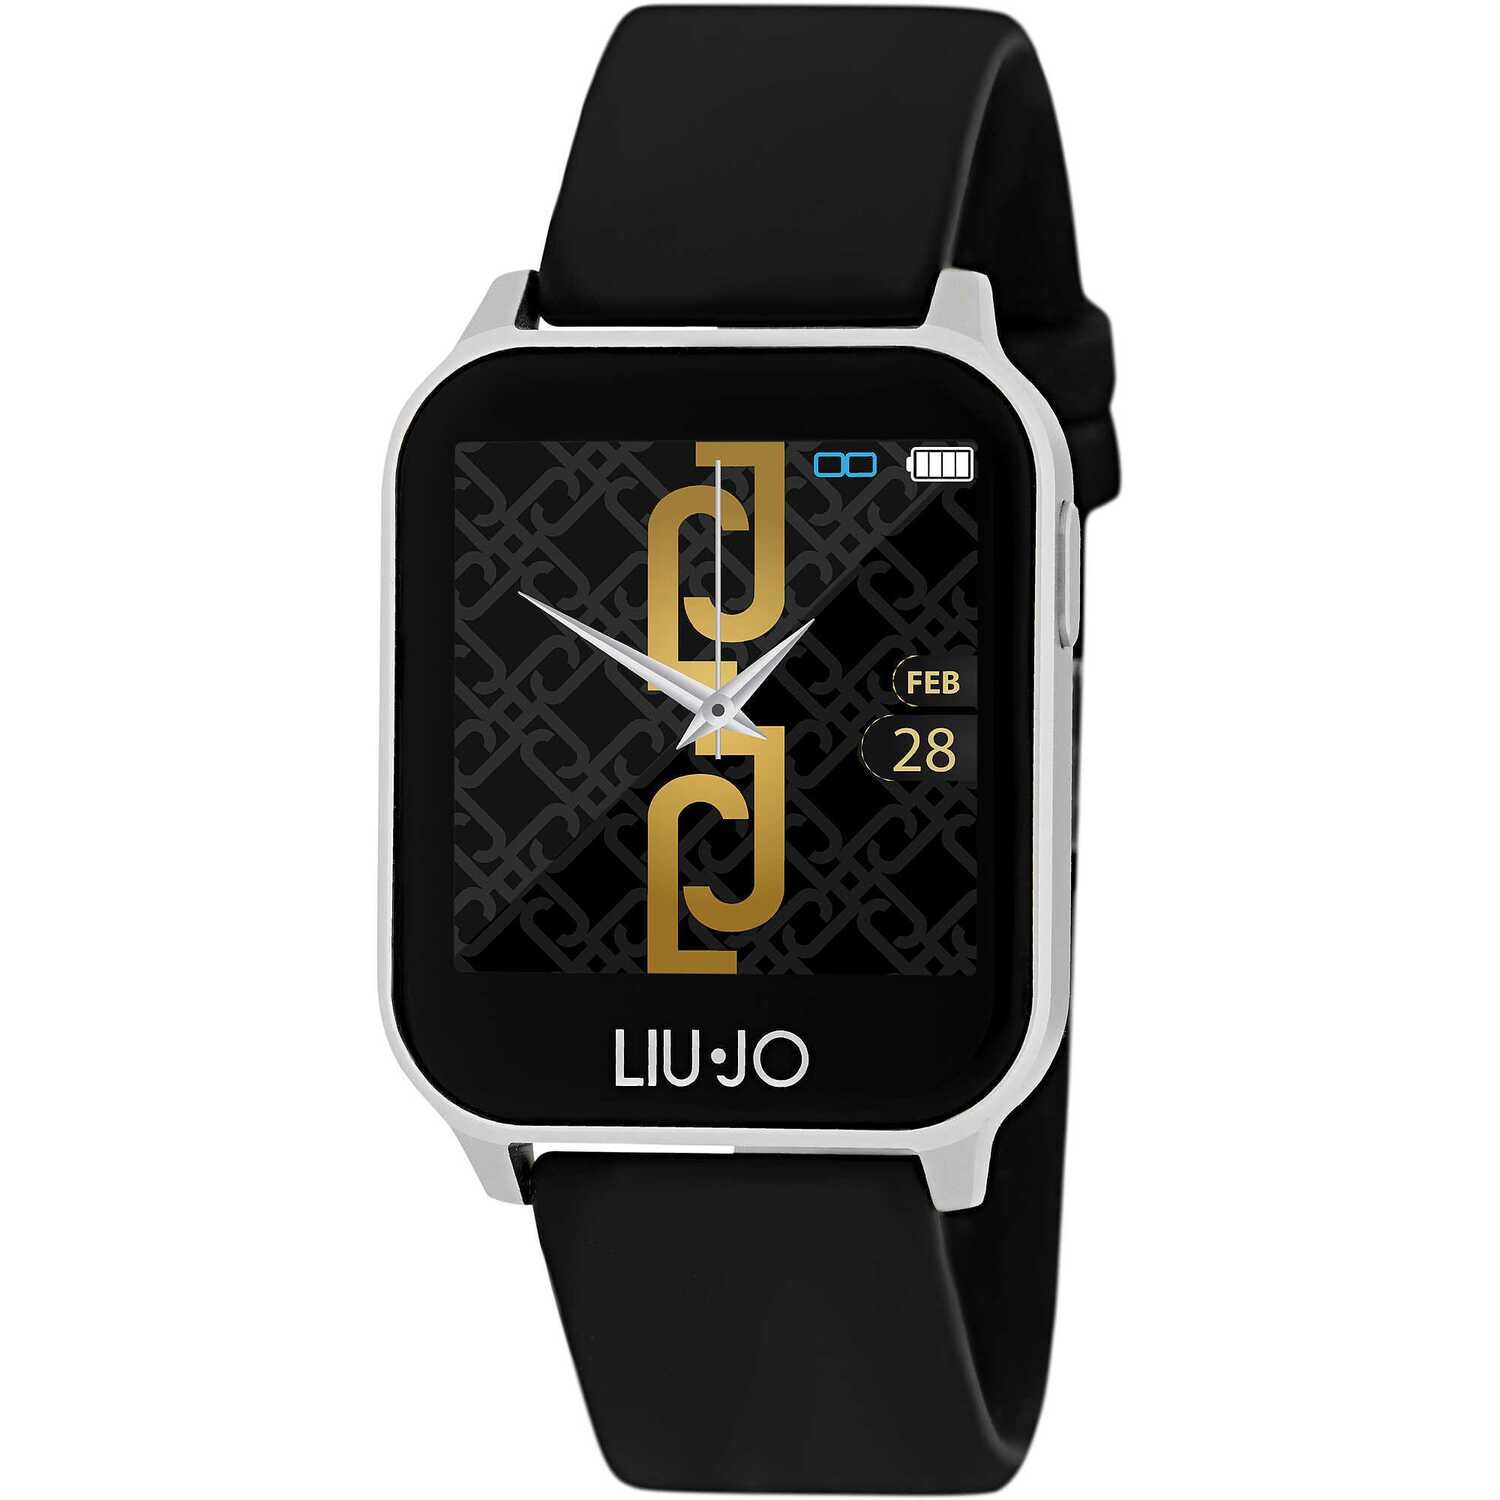 Liu-jo SWLJ013 smartwatch nero cassa argento per donna